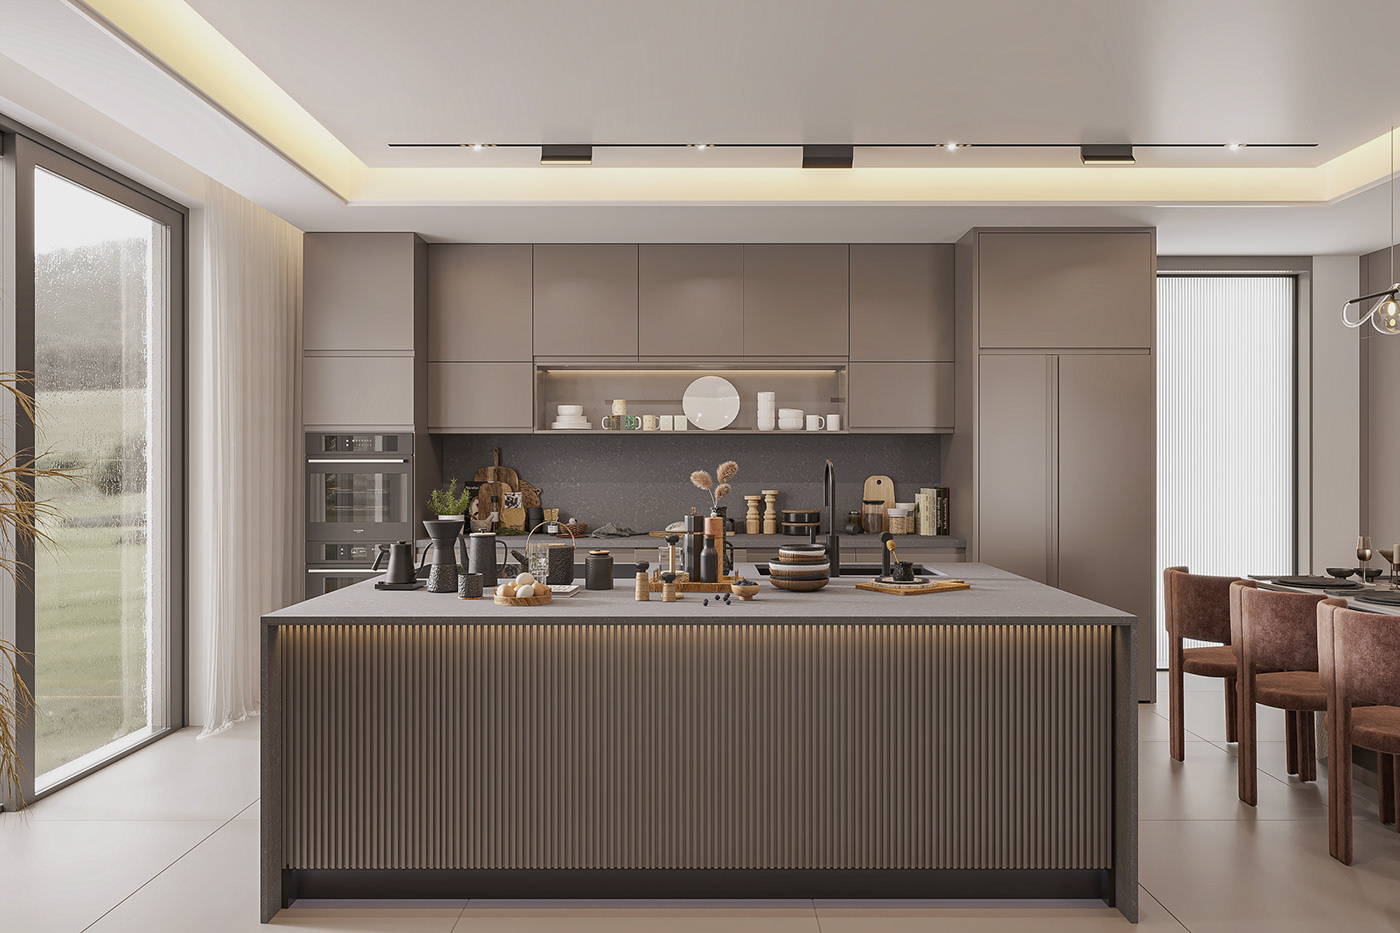 3ds max 3dvisualization Behance corona Interior interior design  kitchen minimalist Render warm